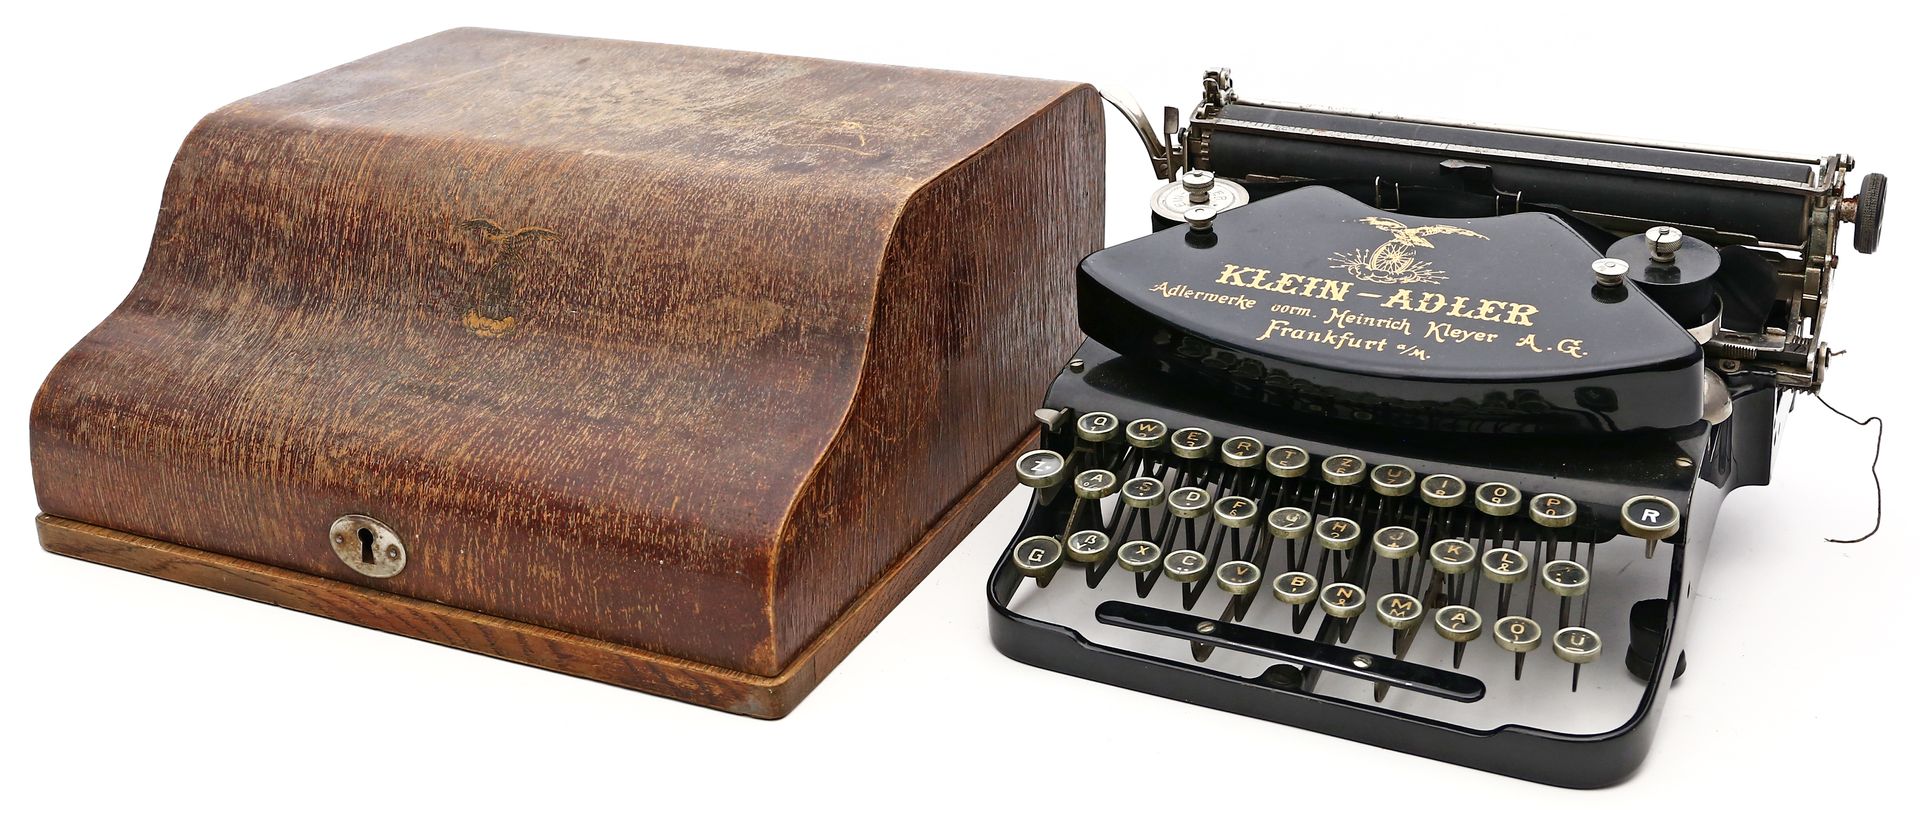 Alte Schreibmaschine "Klein Adler".